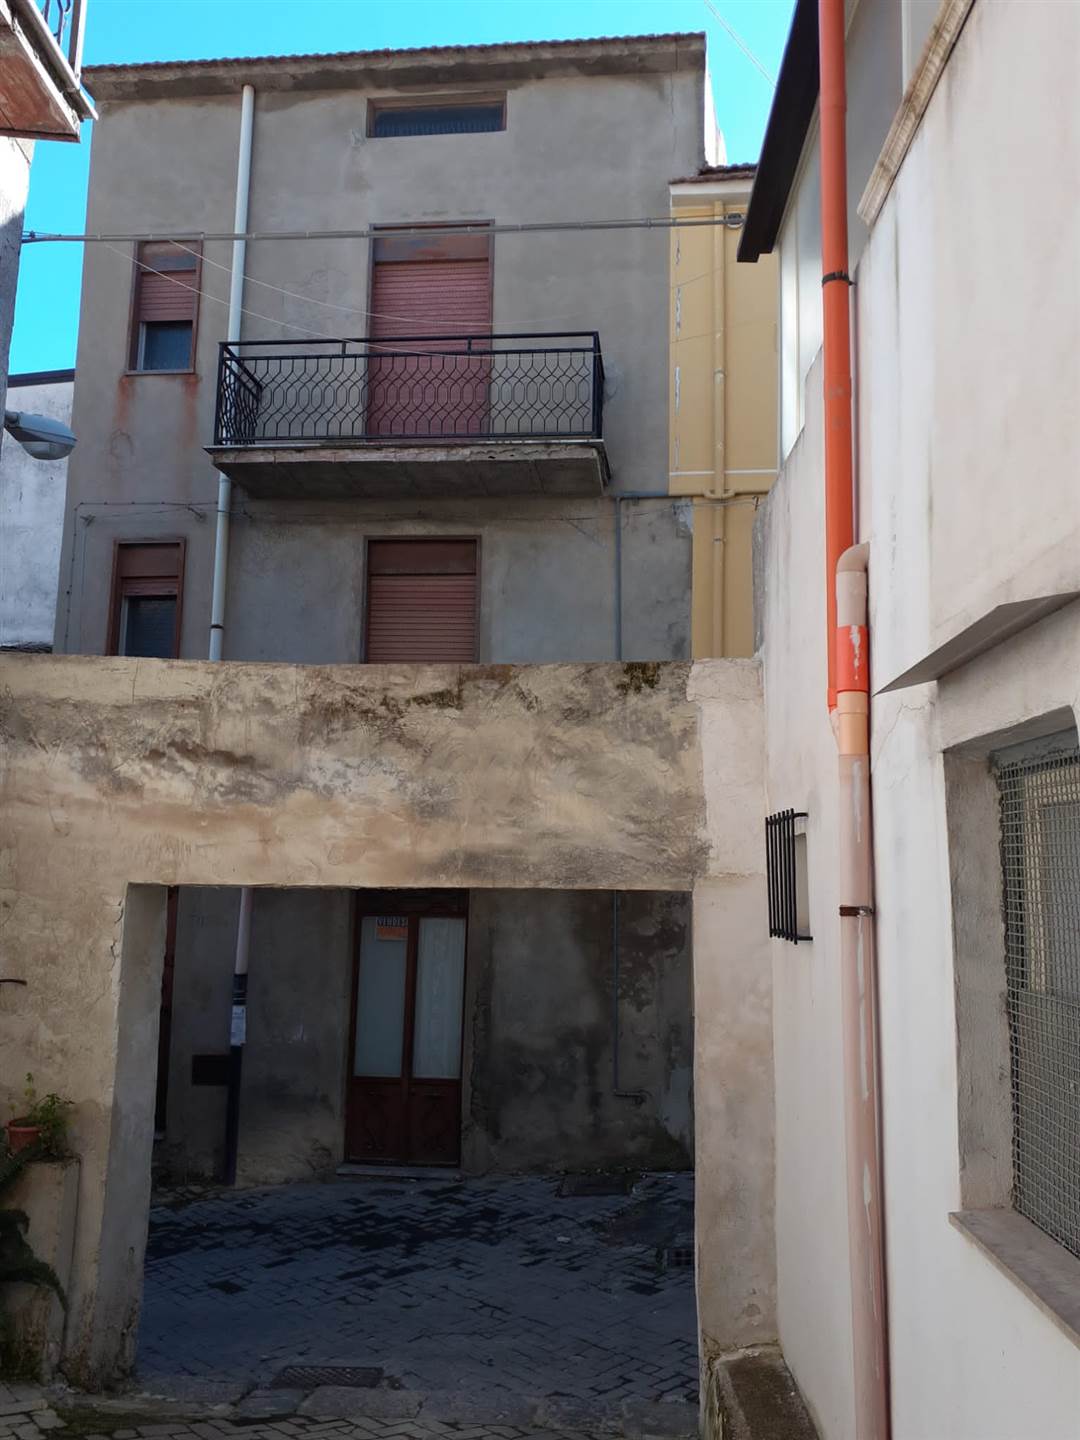 Casa singola in Via Fra Luciano 70 in zona Viale Tigli,via Firenze, Zona Mercato a San Cataldo